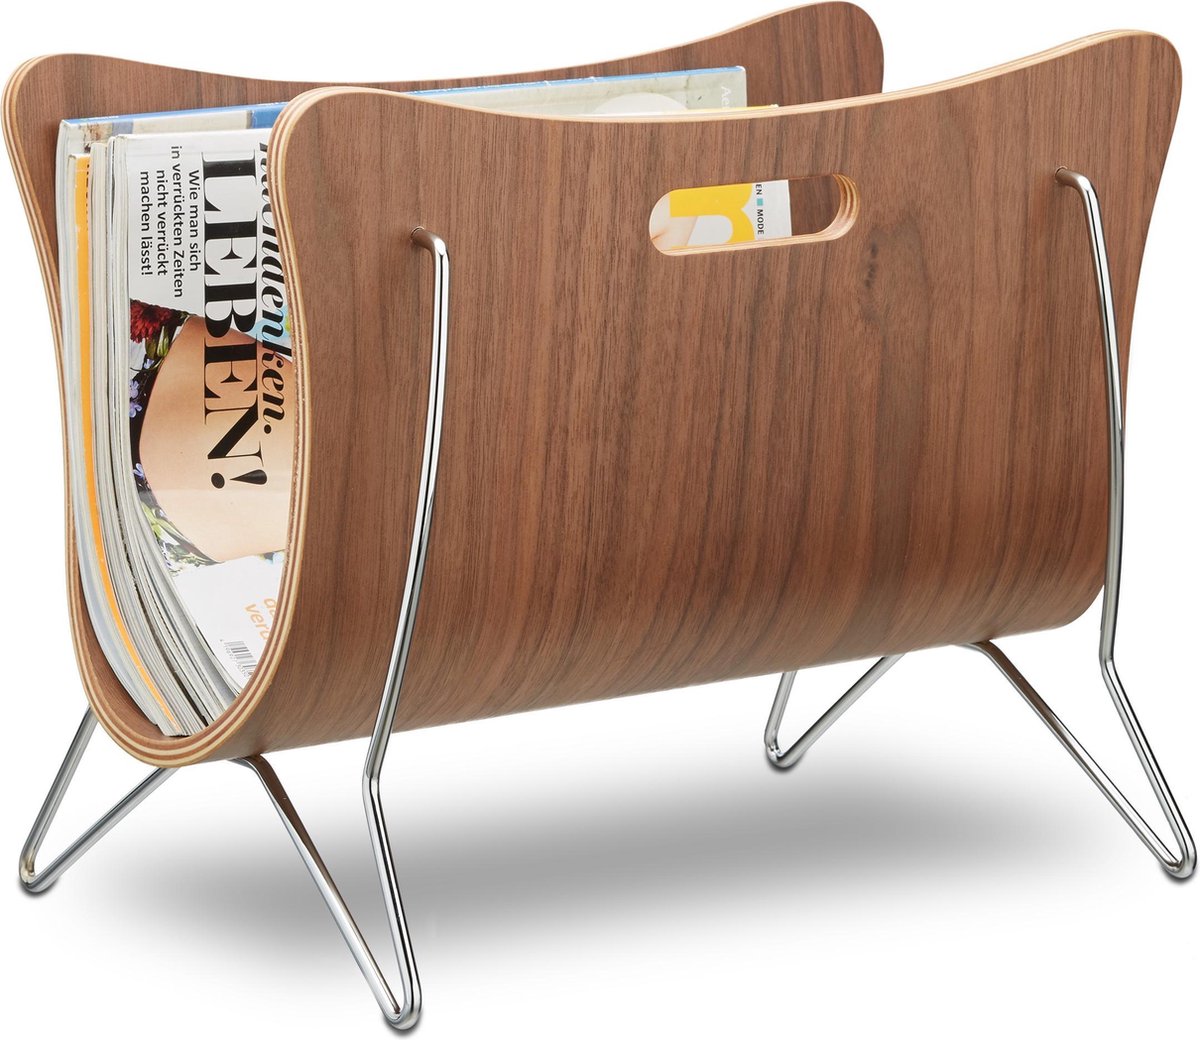 Relaxdays lectuurbak hout tijdschriftenhouder met handvaten krantenbak design metaal